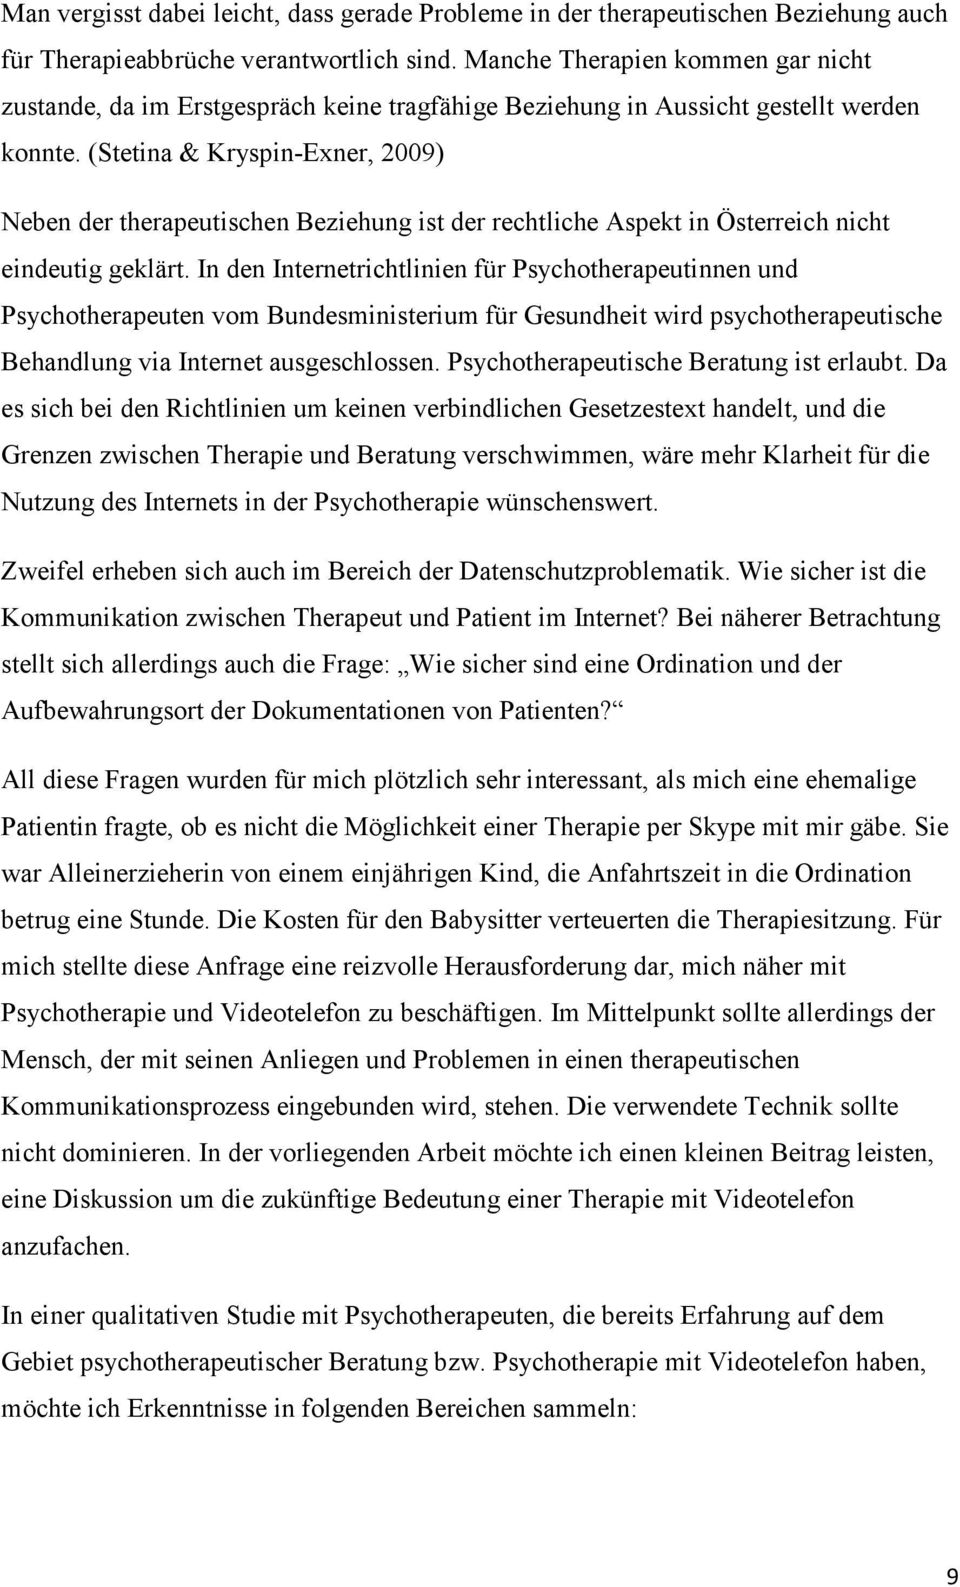 (Stetina & Kryspin-Exner, 2009) Neben der therapeutischen Beziehung ist der rechtliche Aspekt in Österreich nicht eindeutig geklärt.